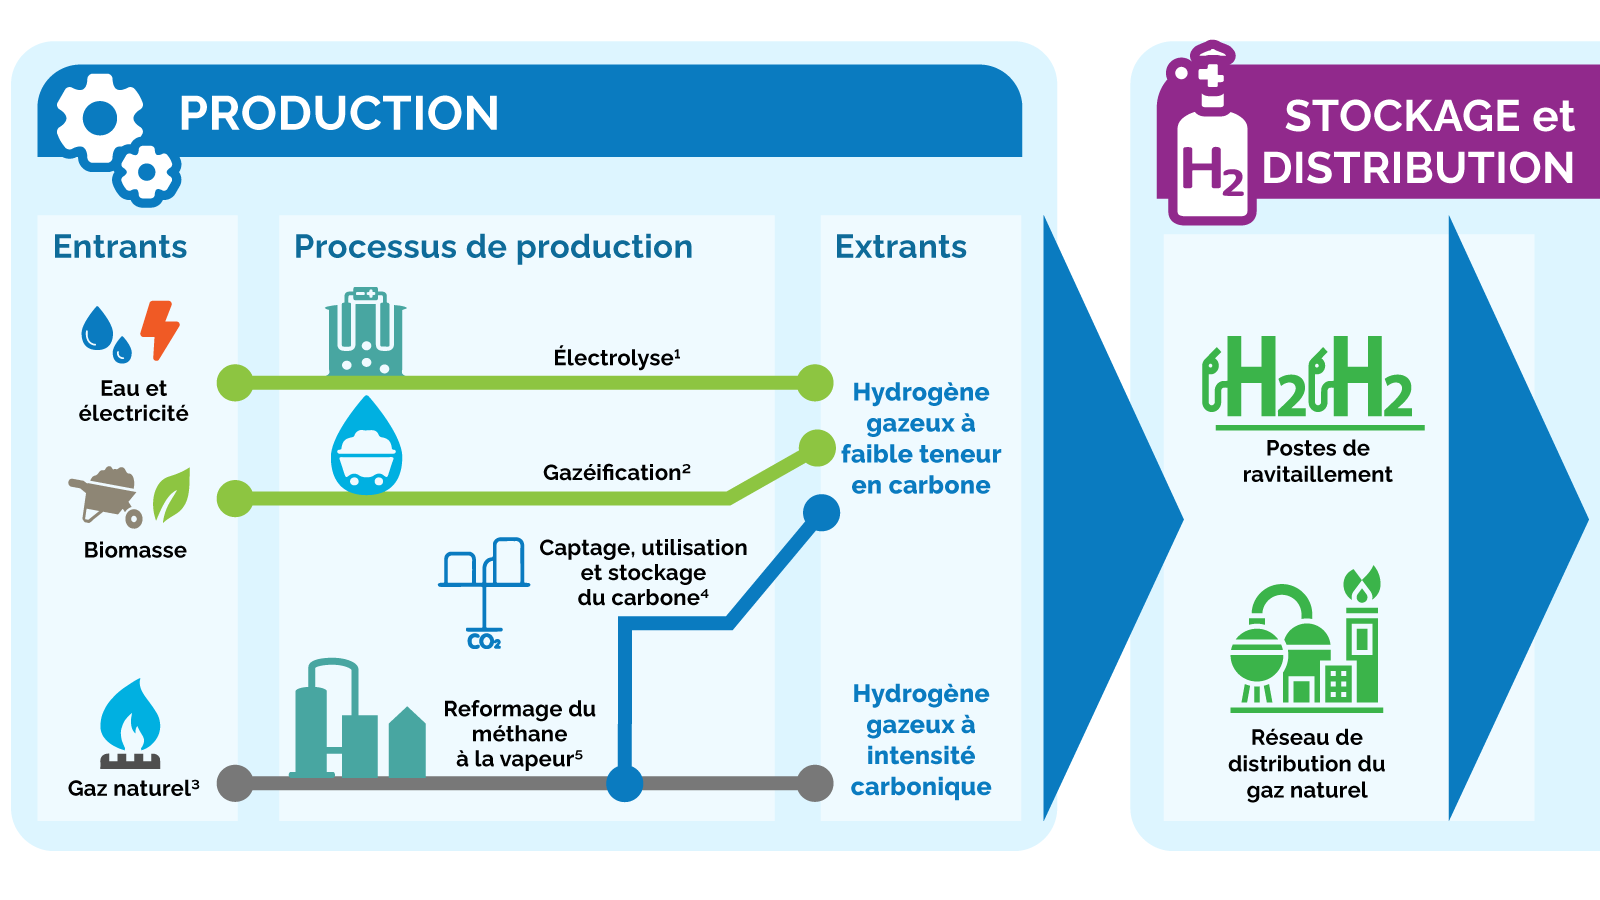 Ce diagramme illustre quatre méthodes de production différentes de l’hydrogène